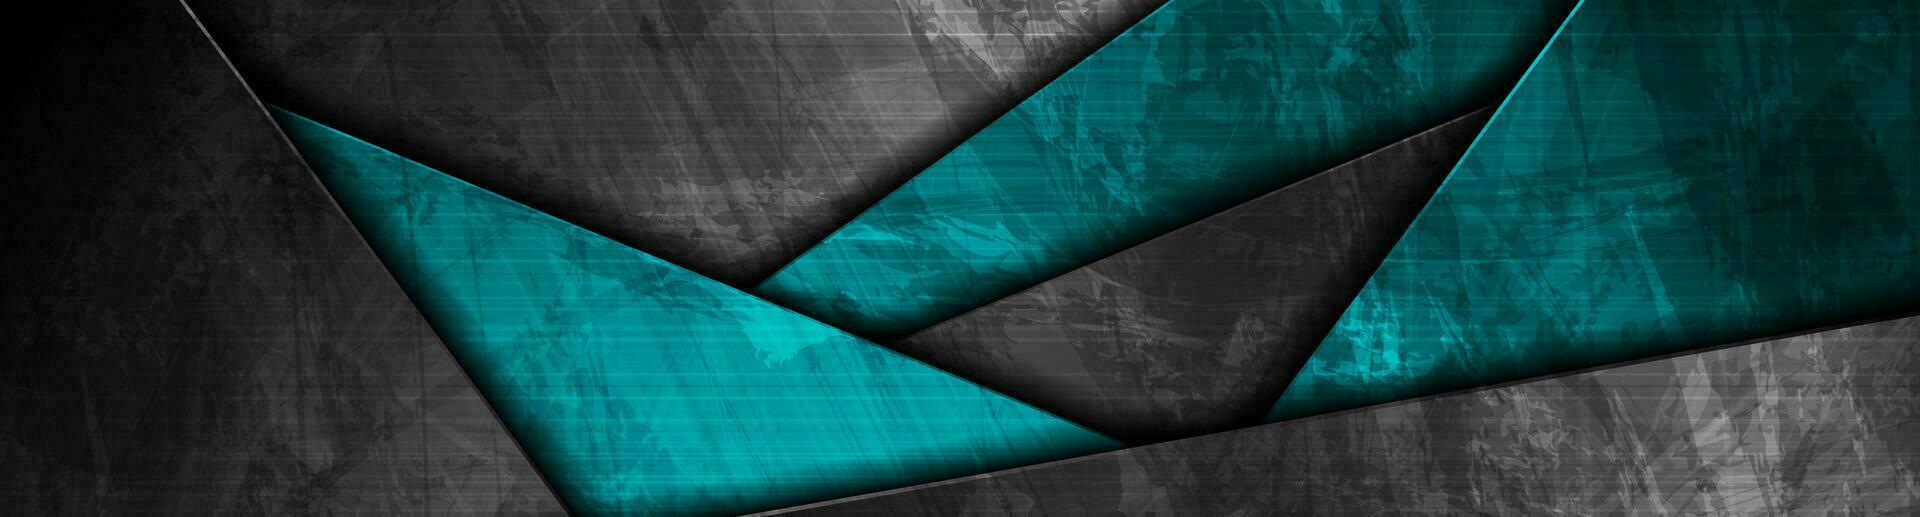 abstrakt svart blå grunge textur företags- material bakgrund vektor